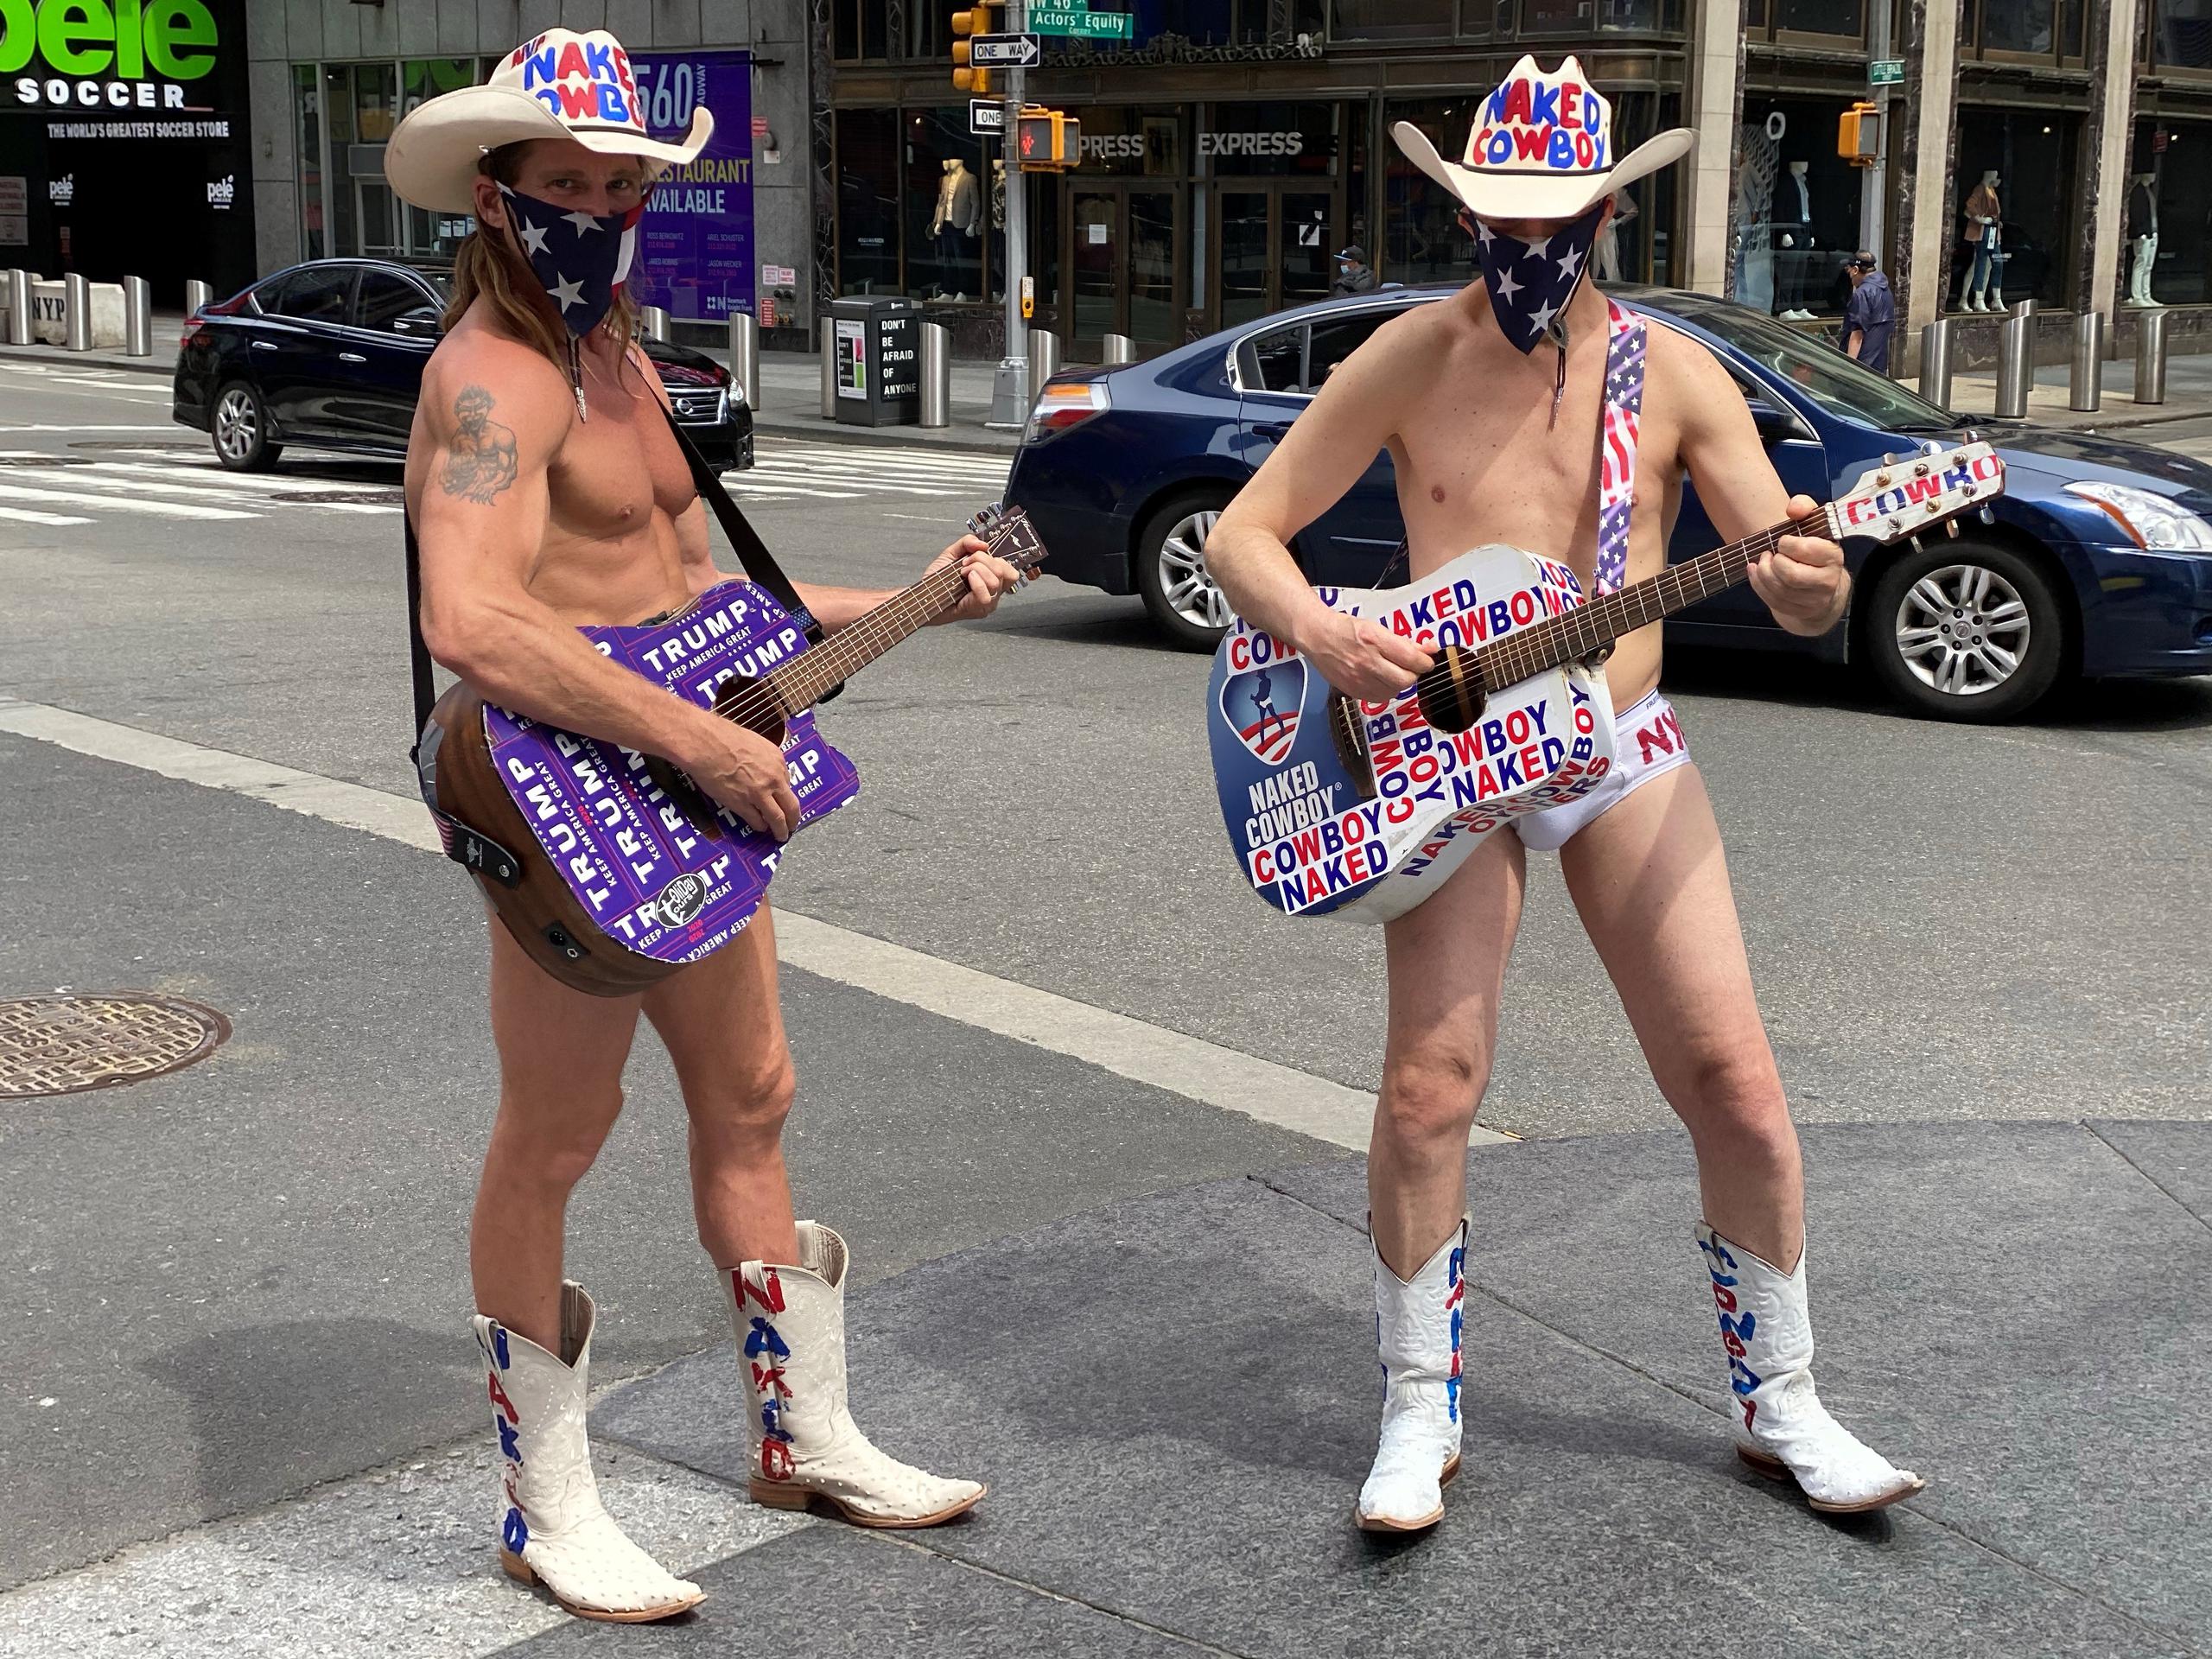 Dos personas disfrazadas como el famoso personaje de Times Square "Naked Cowboy" (Vaquero Desnudo), llevan un pañuelo tapaboca con la estrellas de la bandera nacional este fin de semana en una calle de Nueva York.
